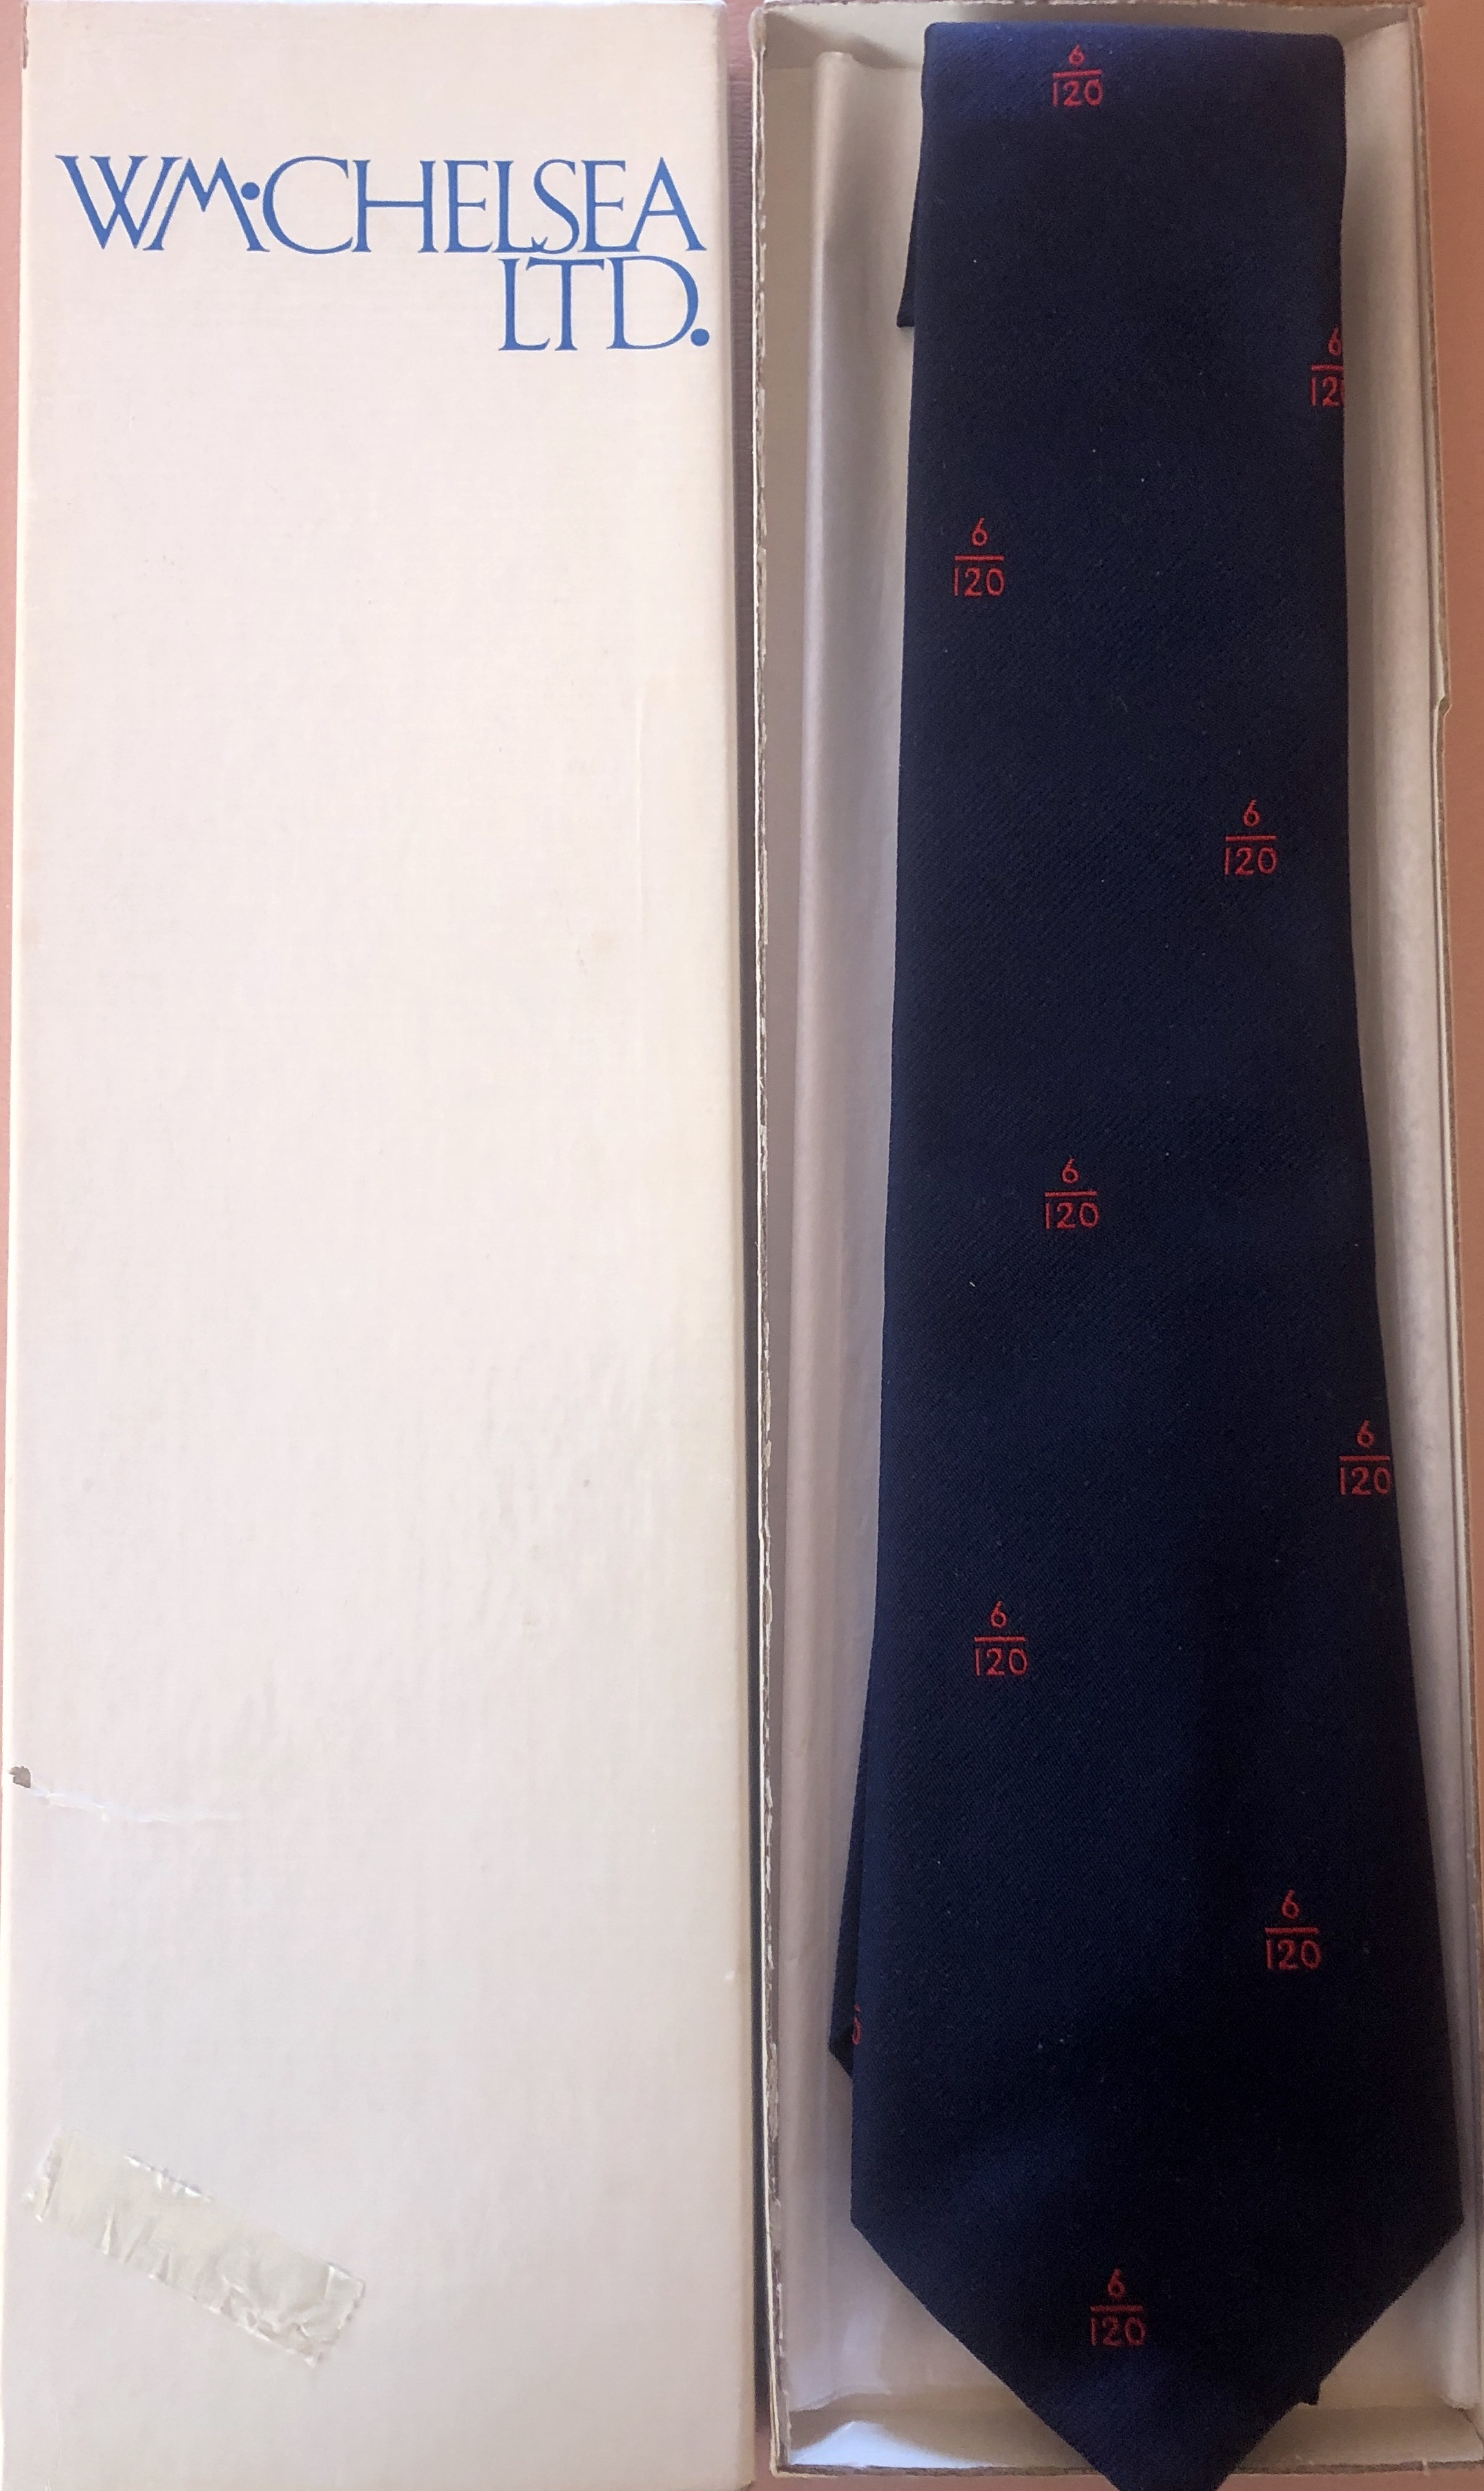 A neck tie in a presentation box.